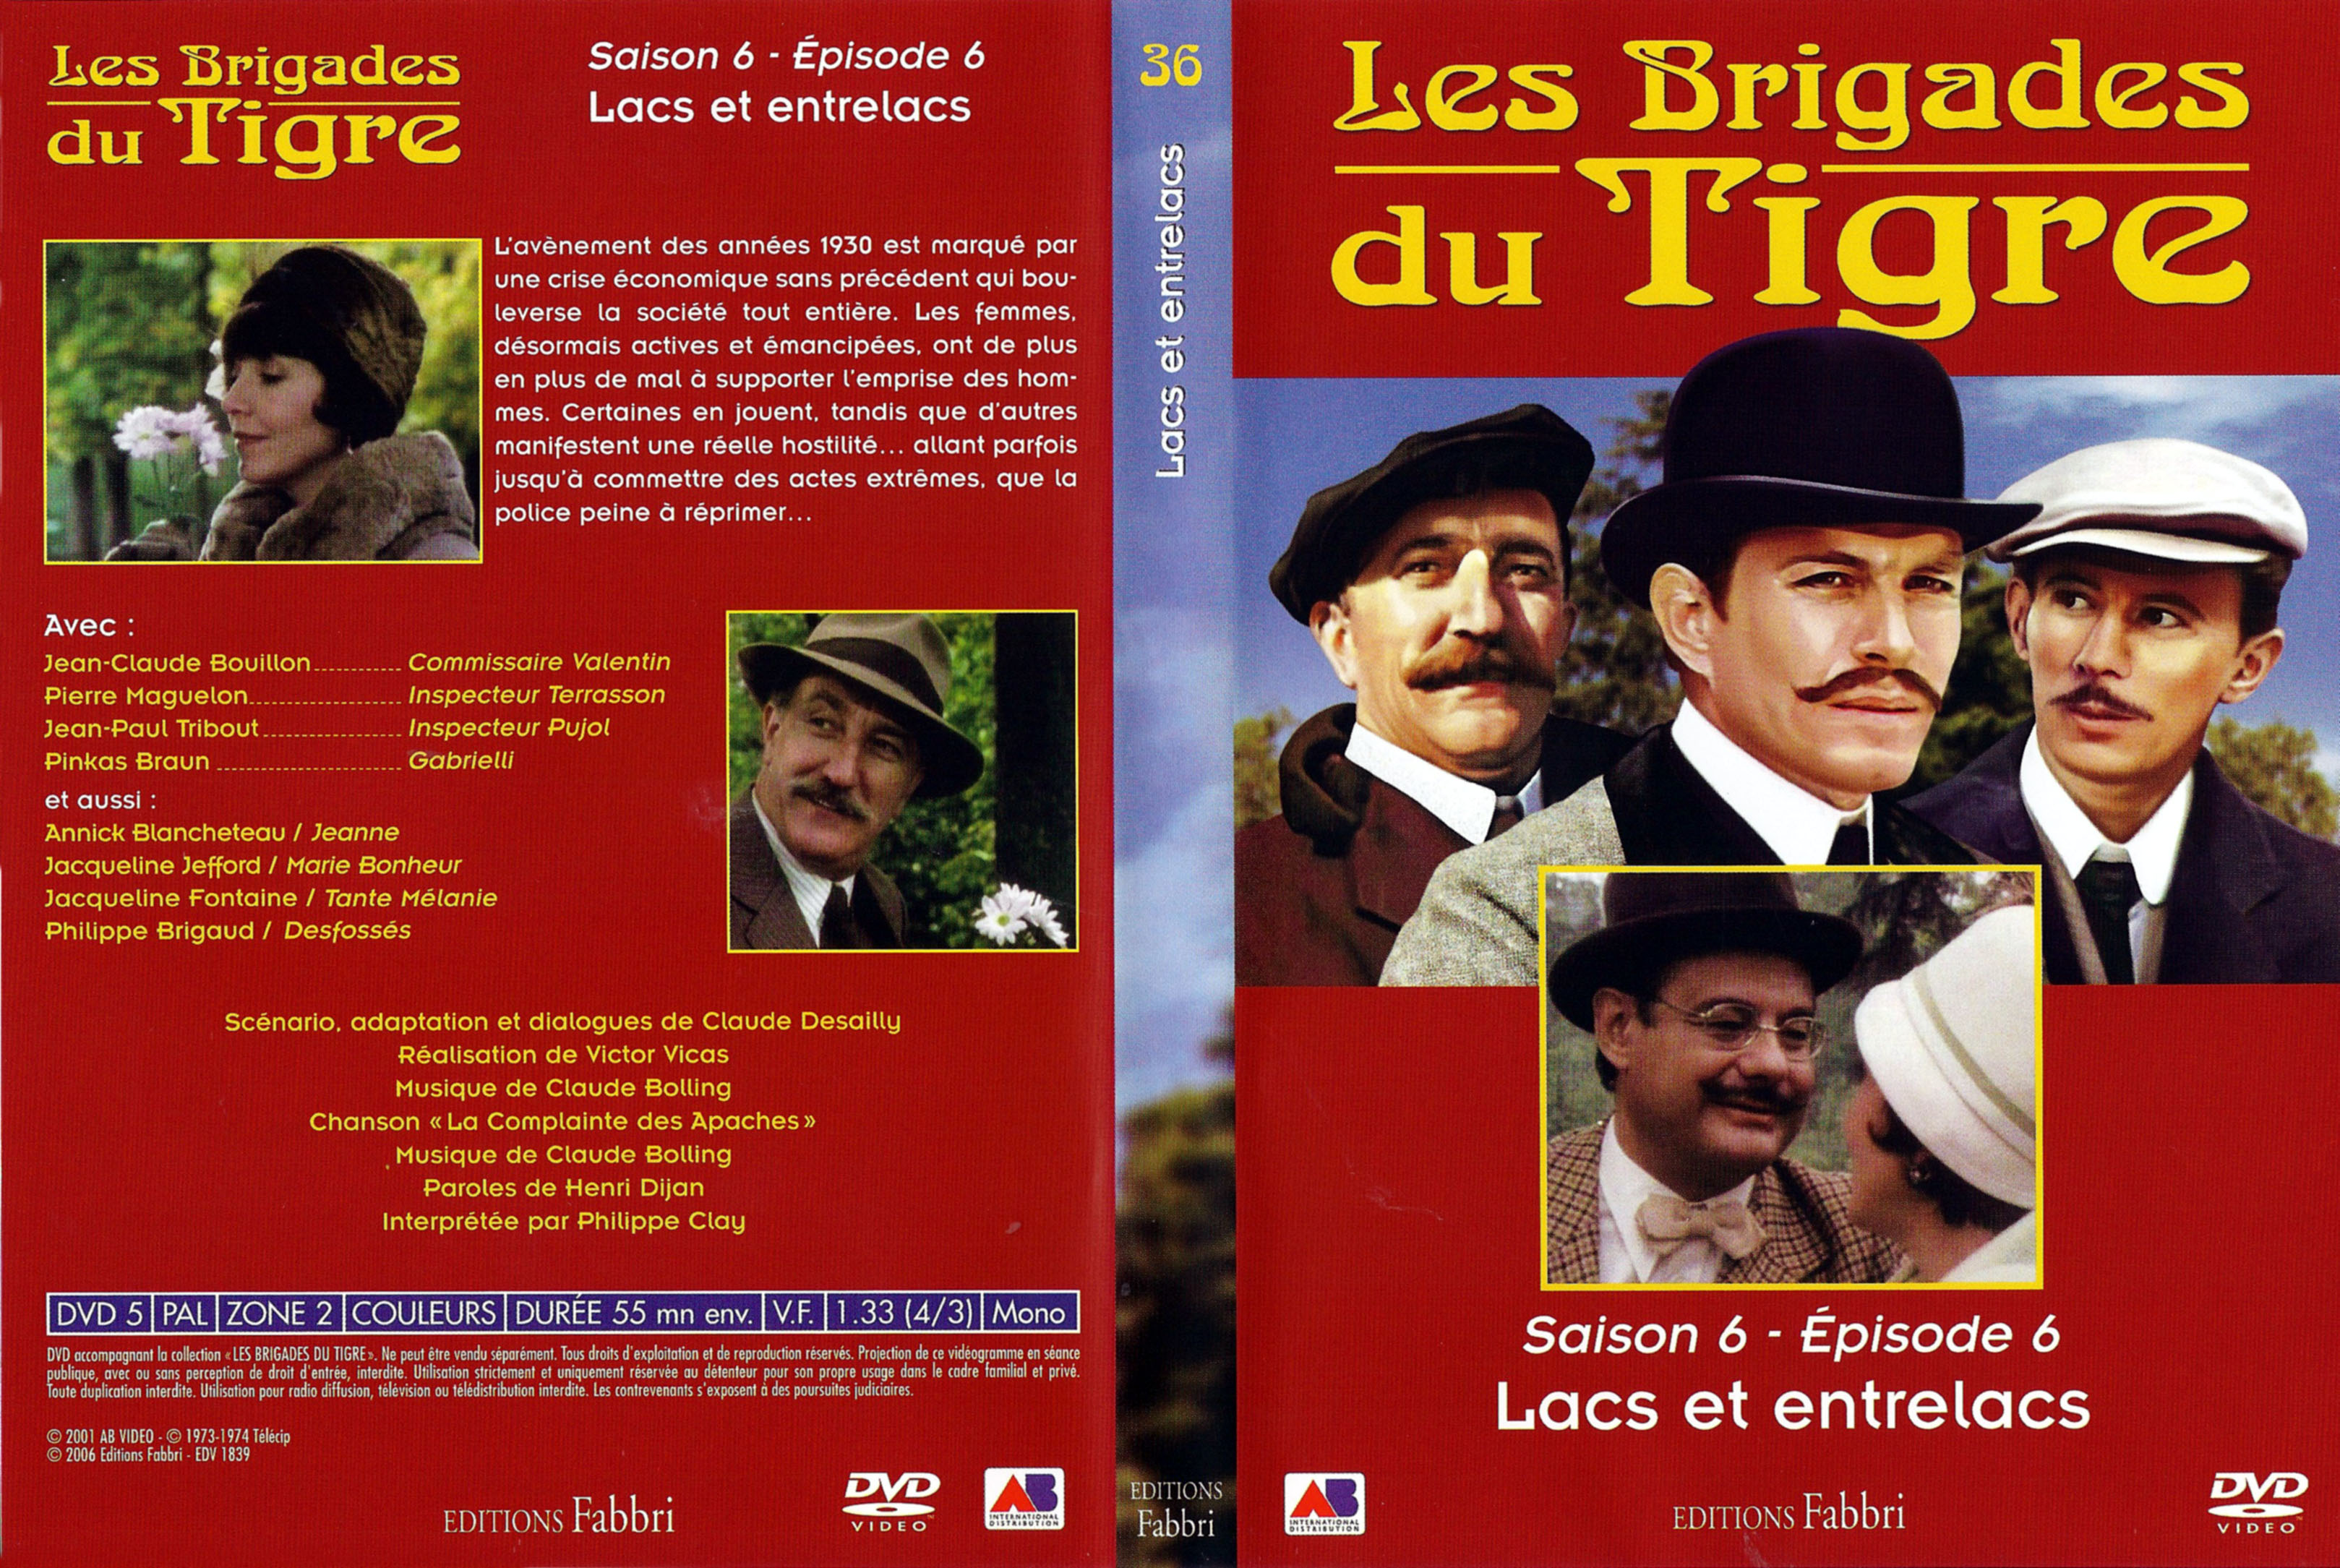 Jaquette DVD Les brigades du tigre saison 6 pisode 6